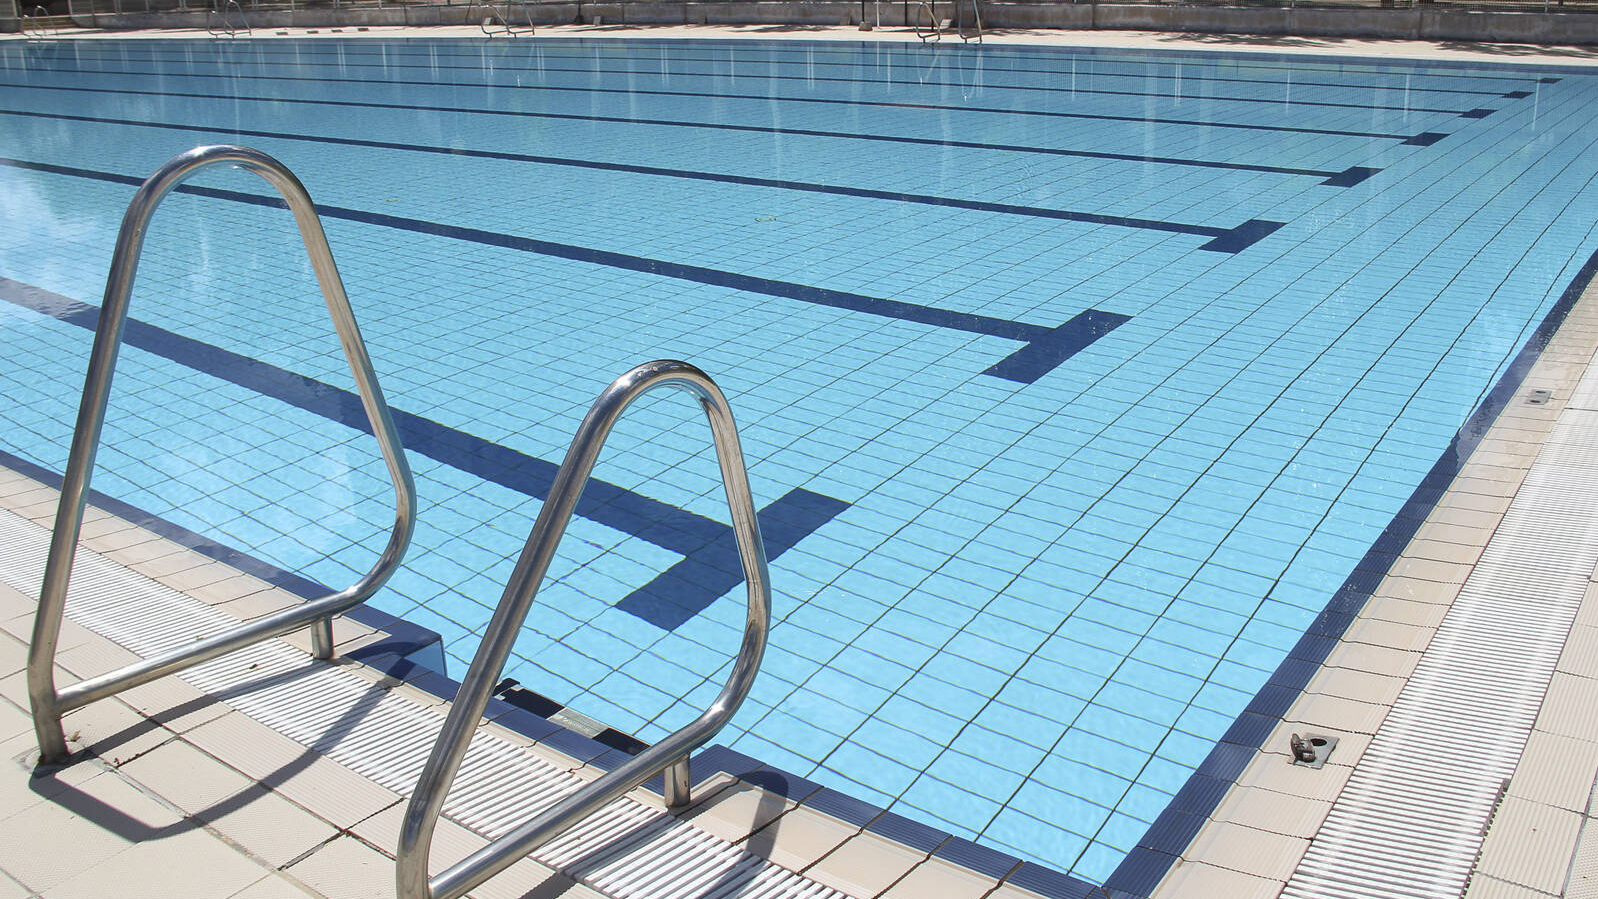 Arganda comenzará la temporada de las piscinas de verano el 1 de junio